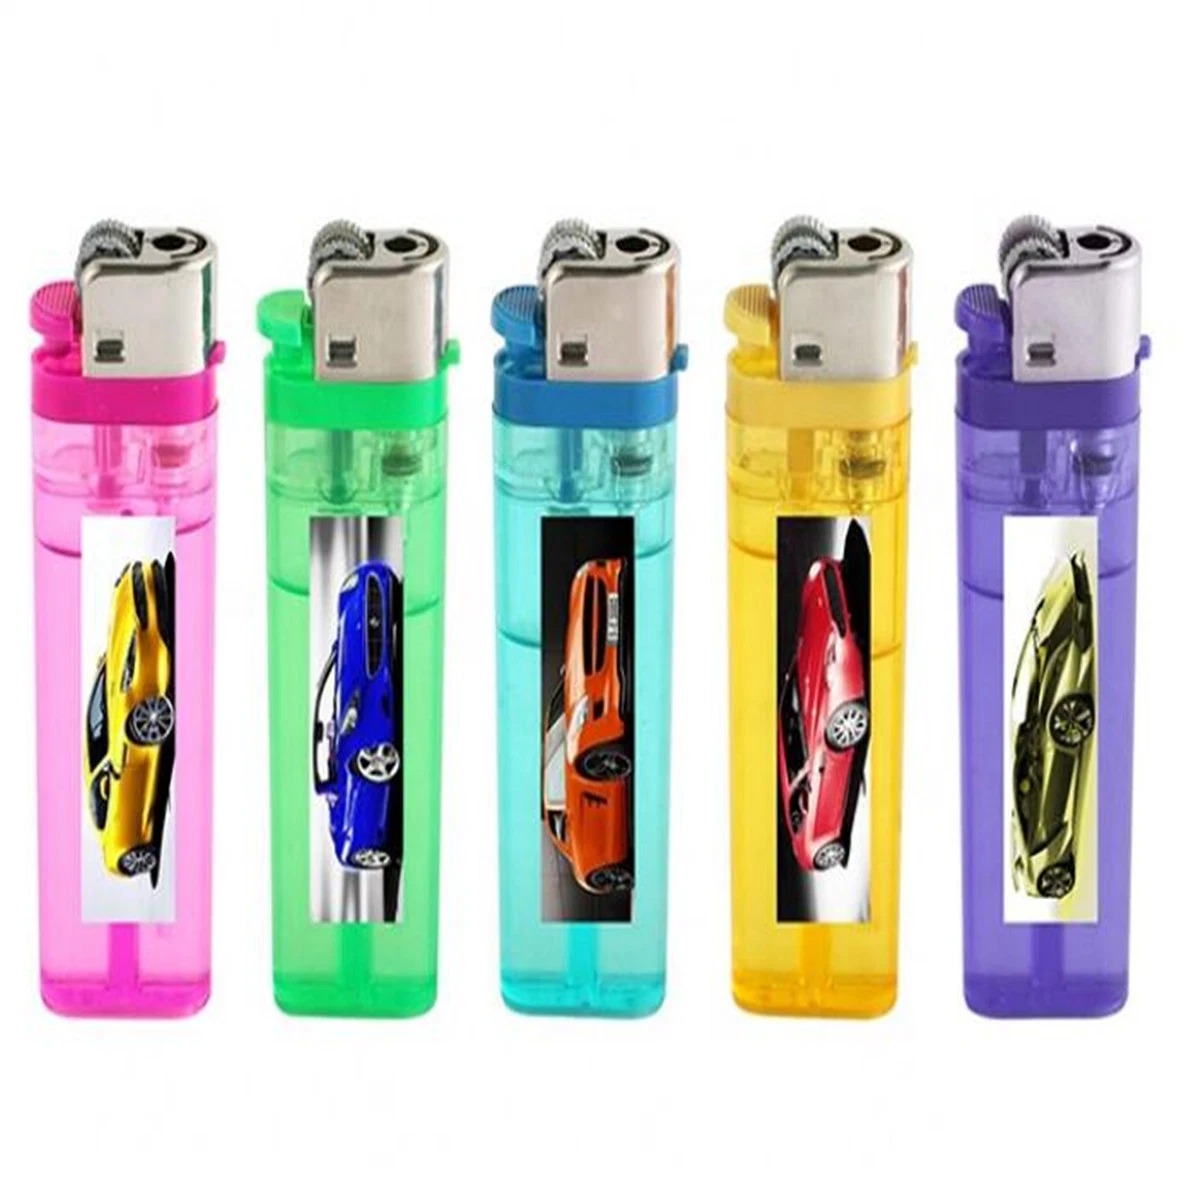 Cheap Lighter Disposable Refillable Customs Lighter Gas Flint Lighter